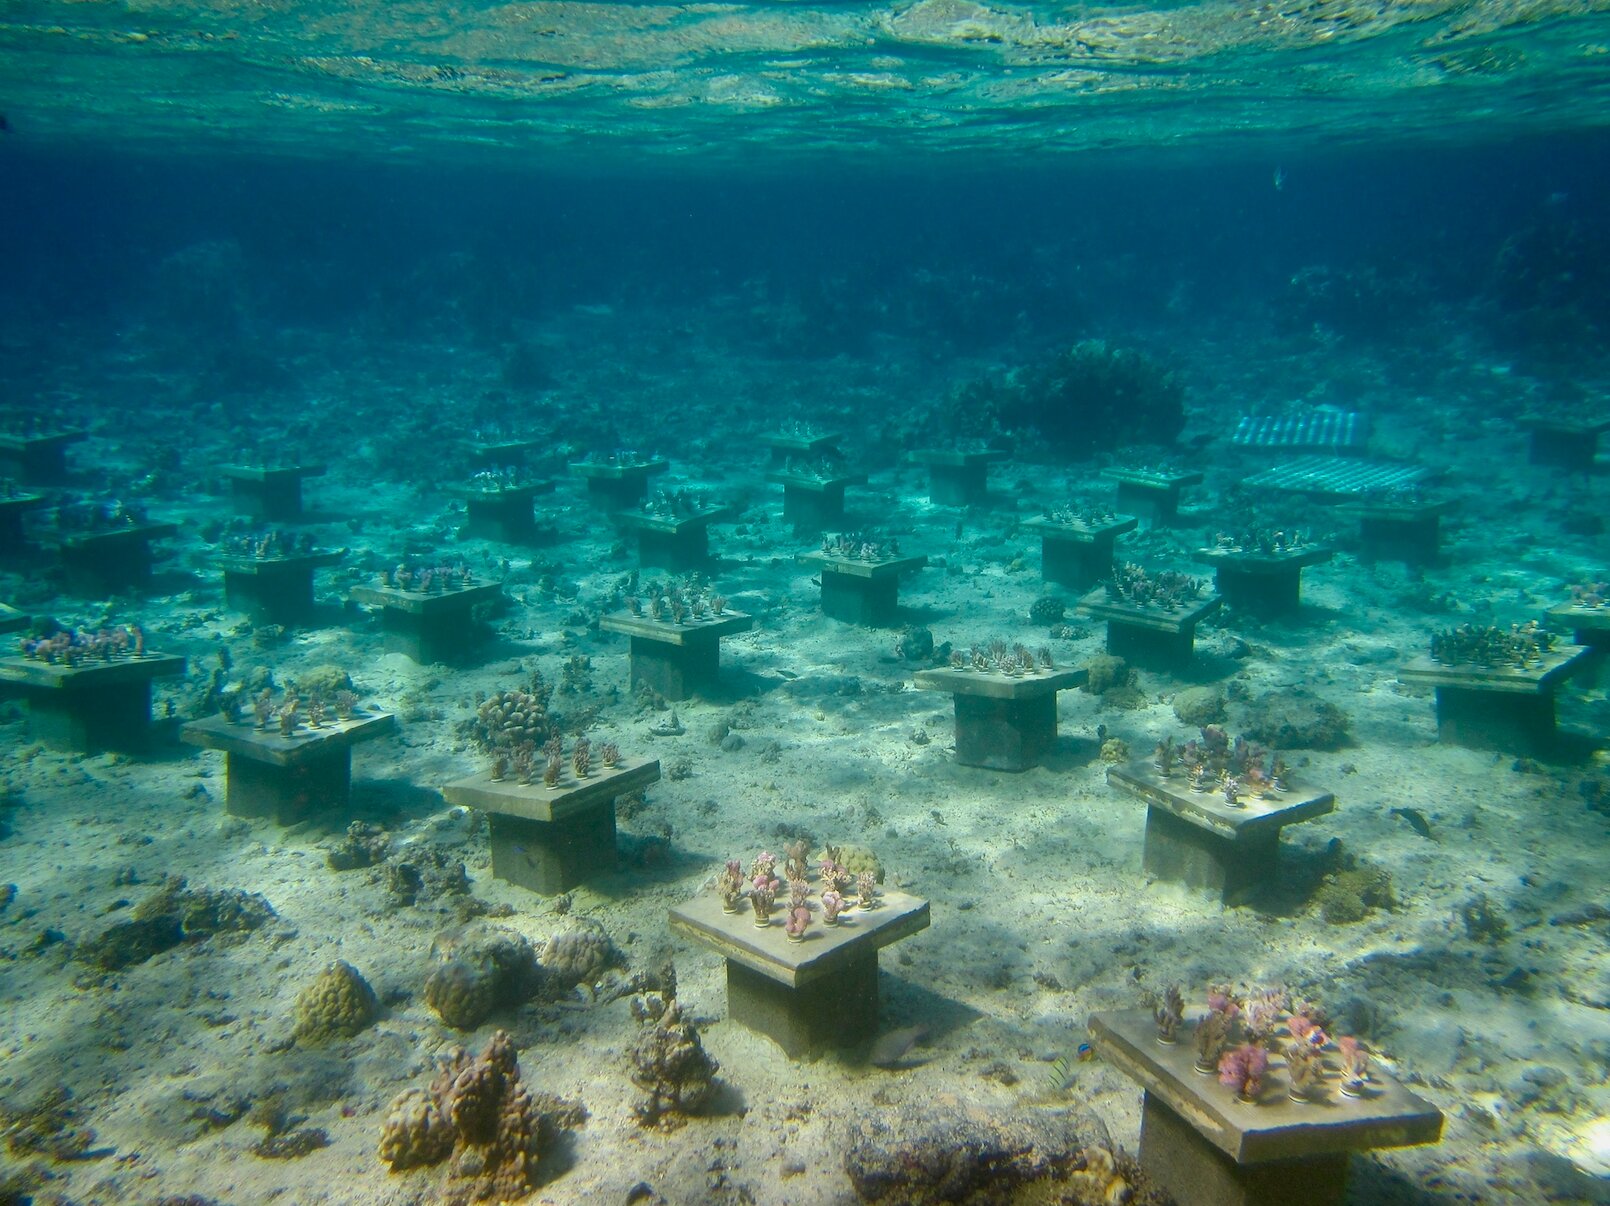 Underwater gardens boost coral diversity to stave off 'biodiversity meltdown'